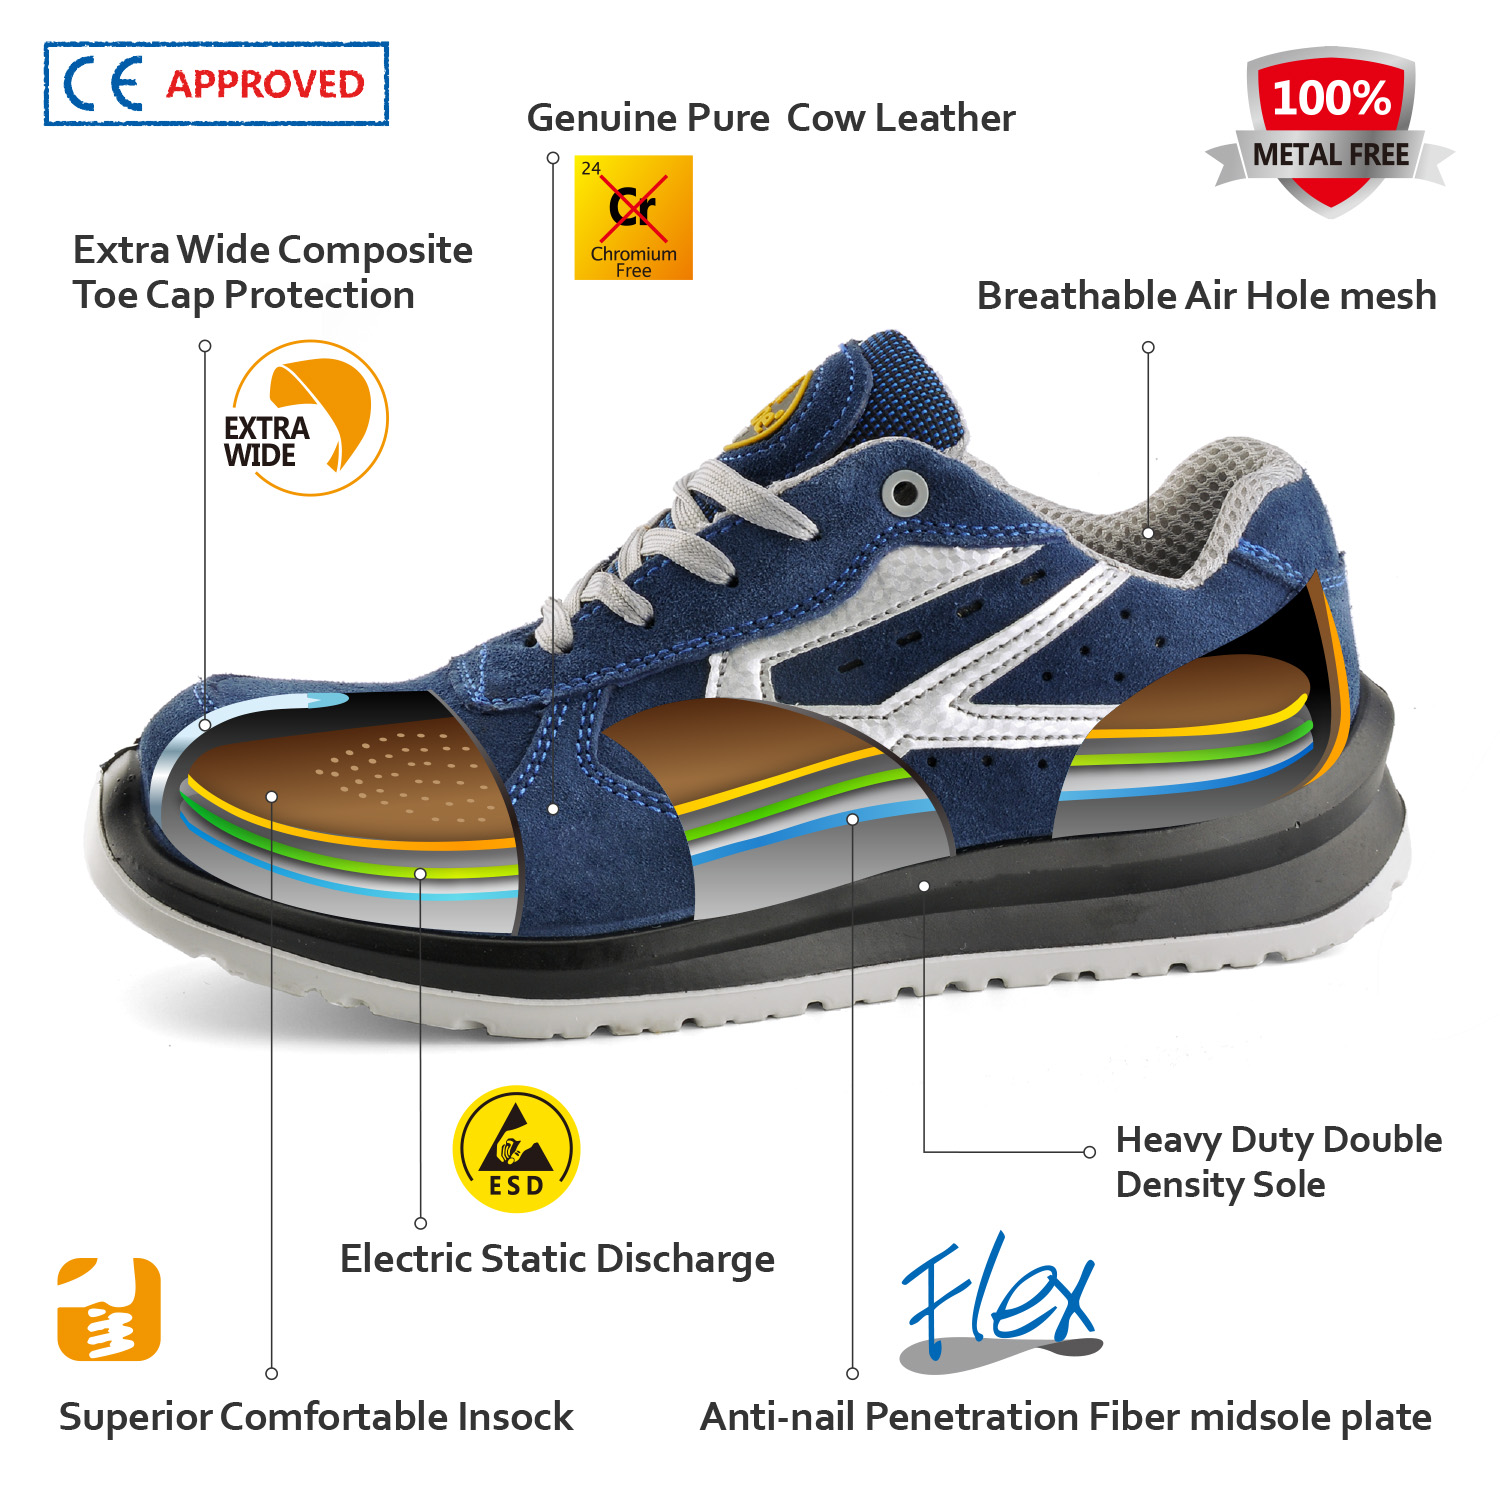 Обувь промышленной безопасности, одобренная CE L-7328